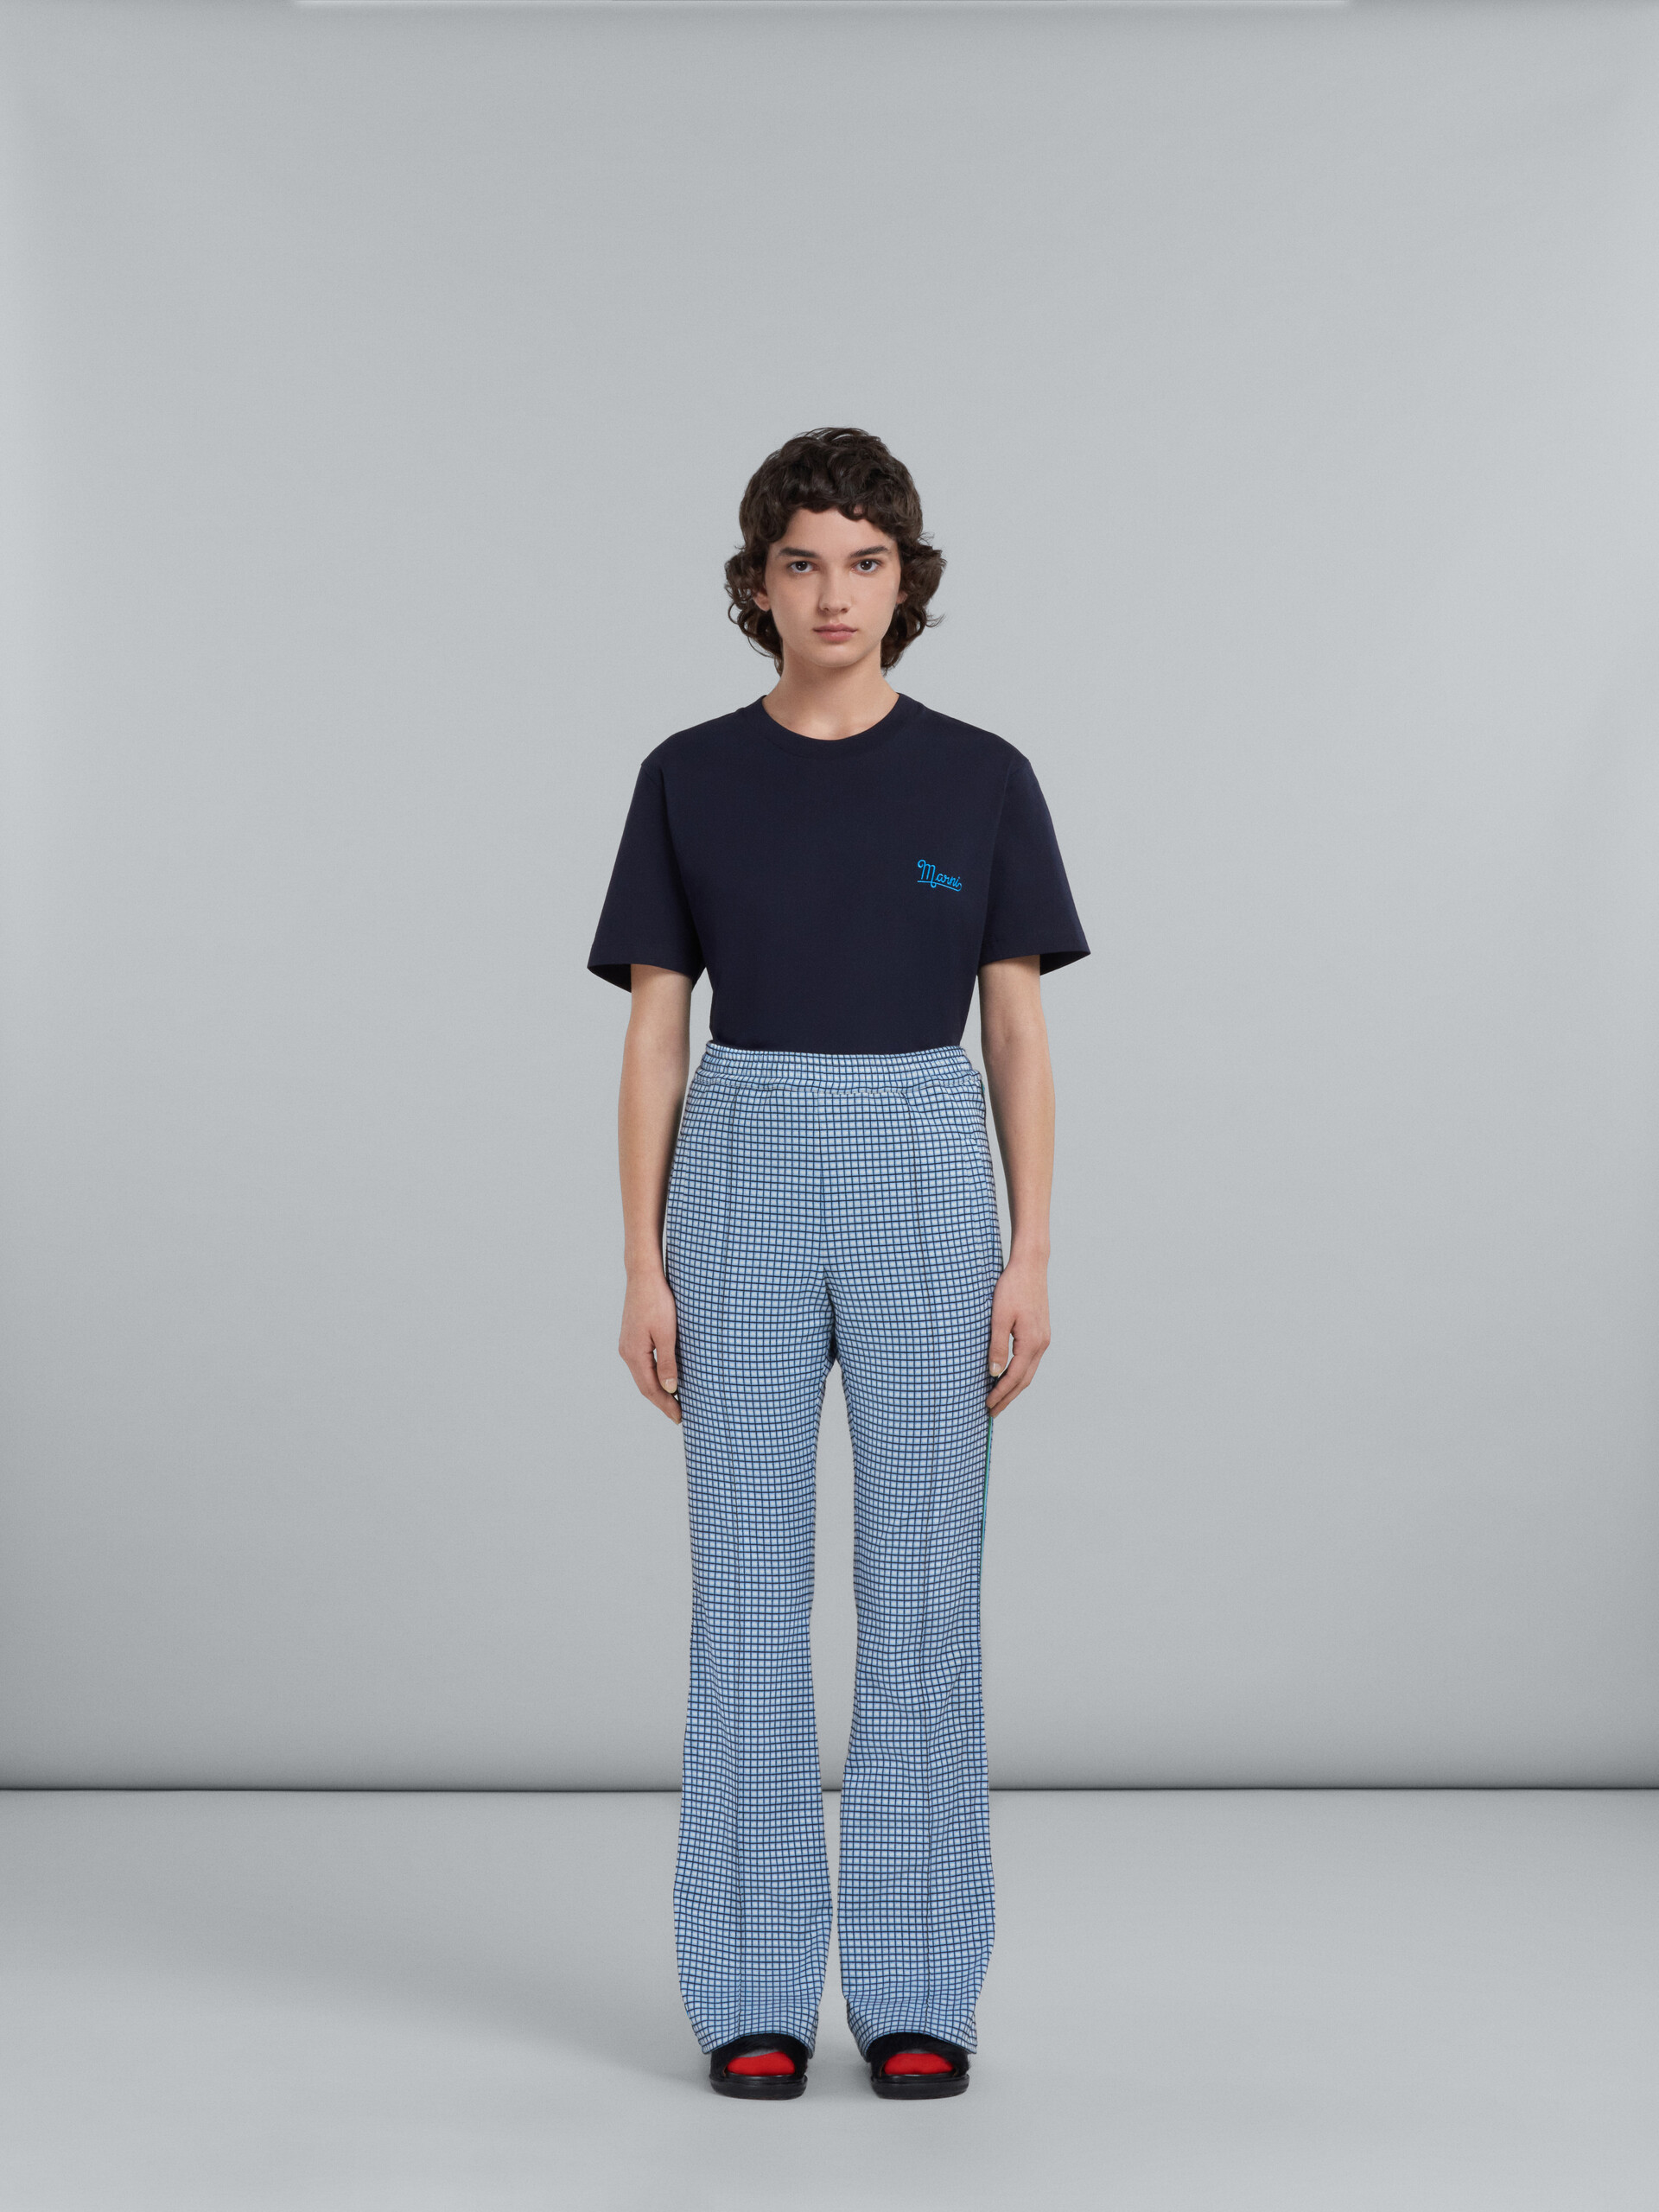 Pantaloni a zampa in jacquard azzurro - Pantaloni - Image 2